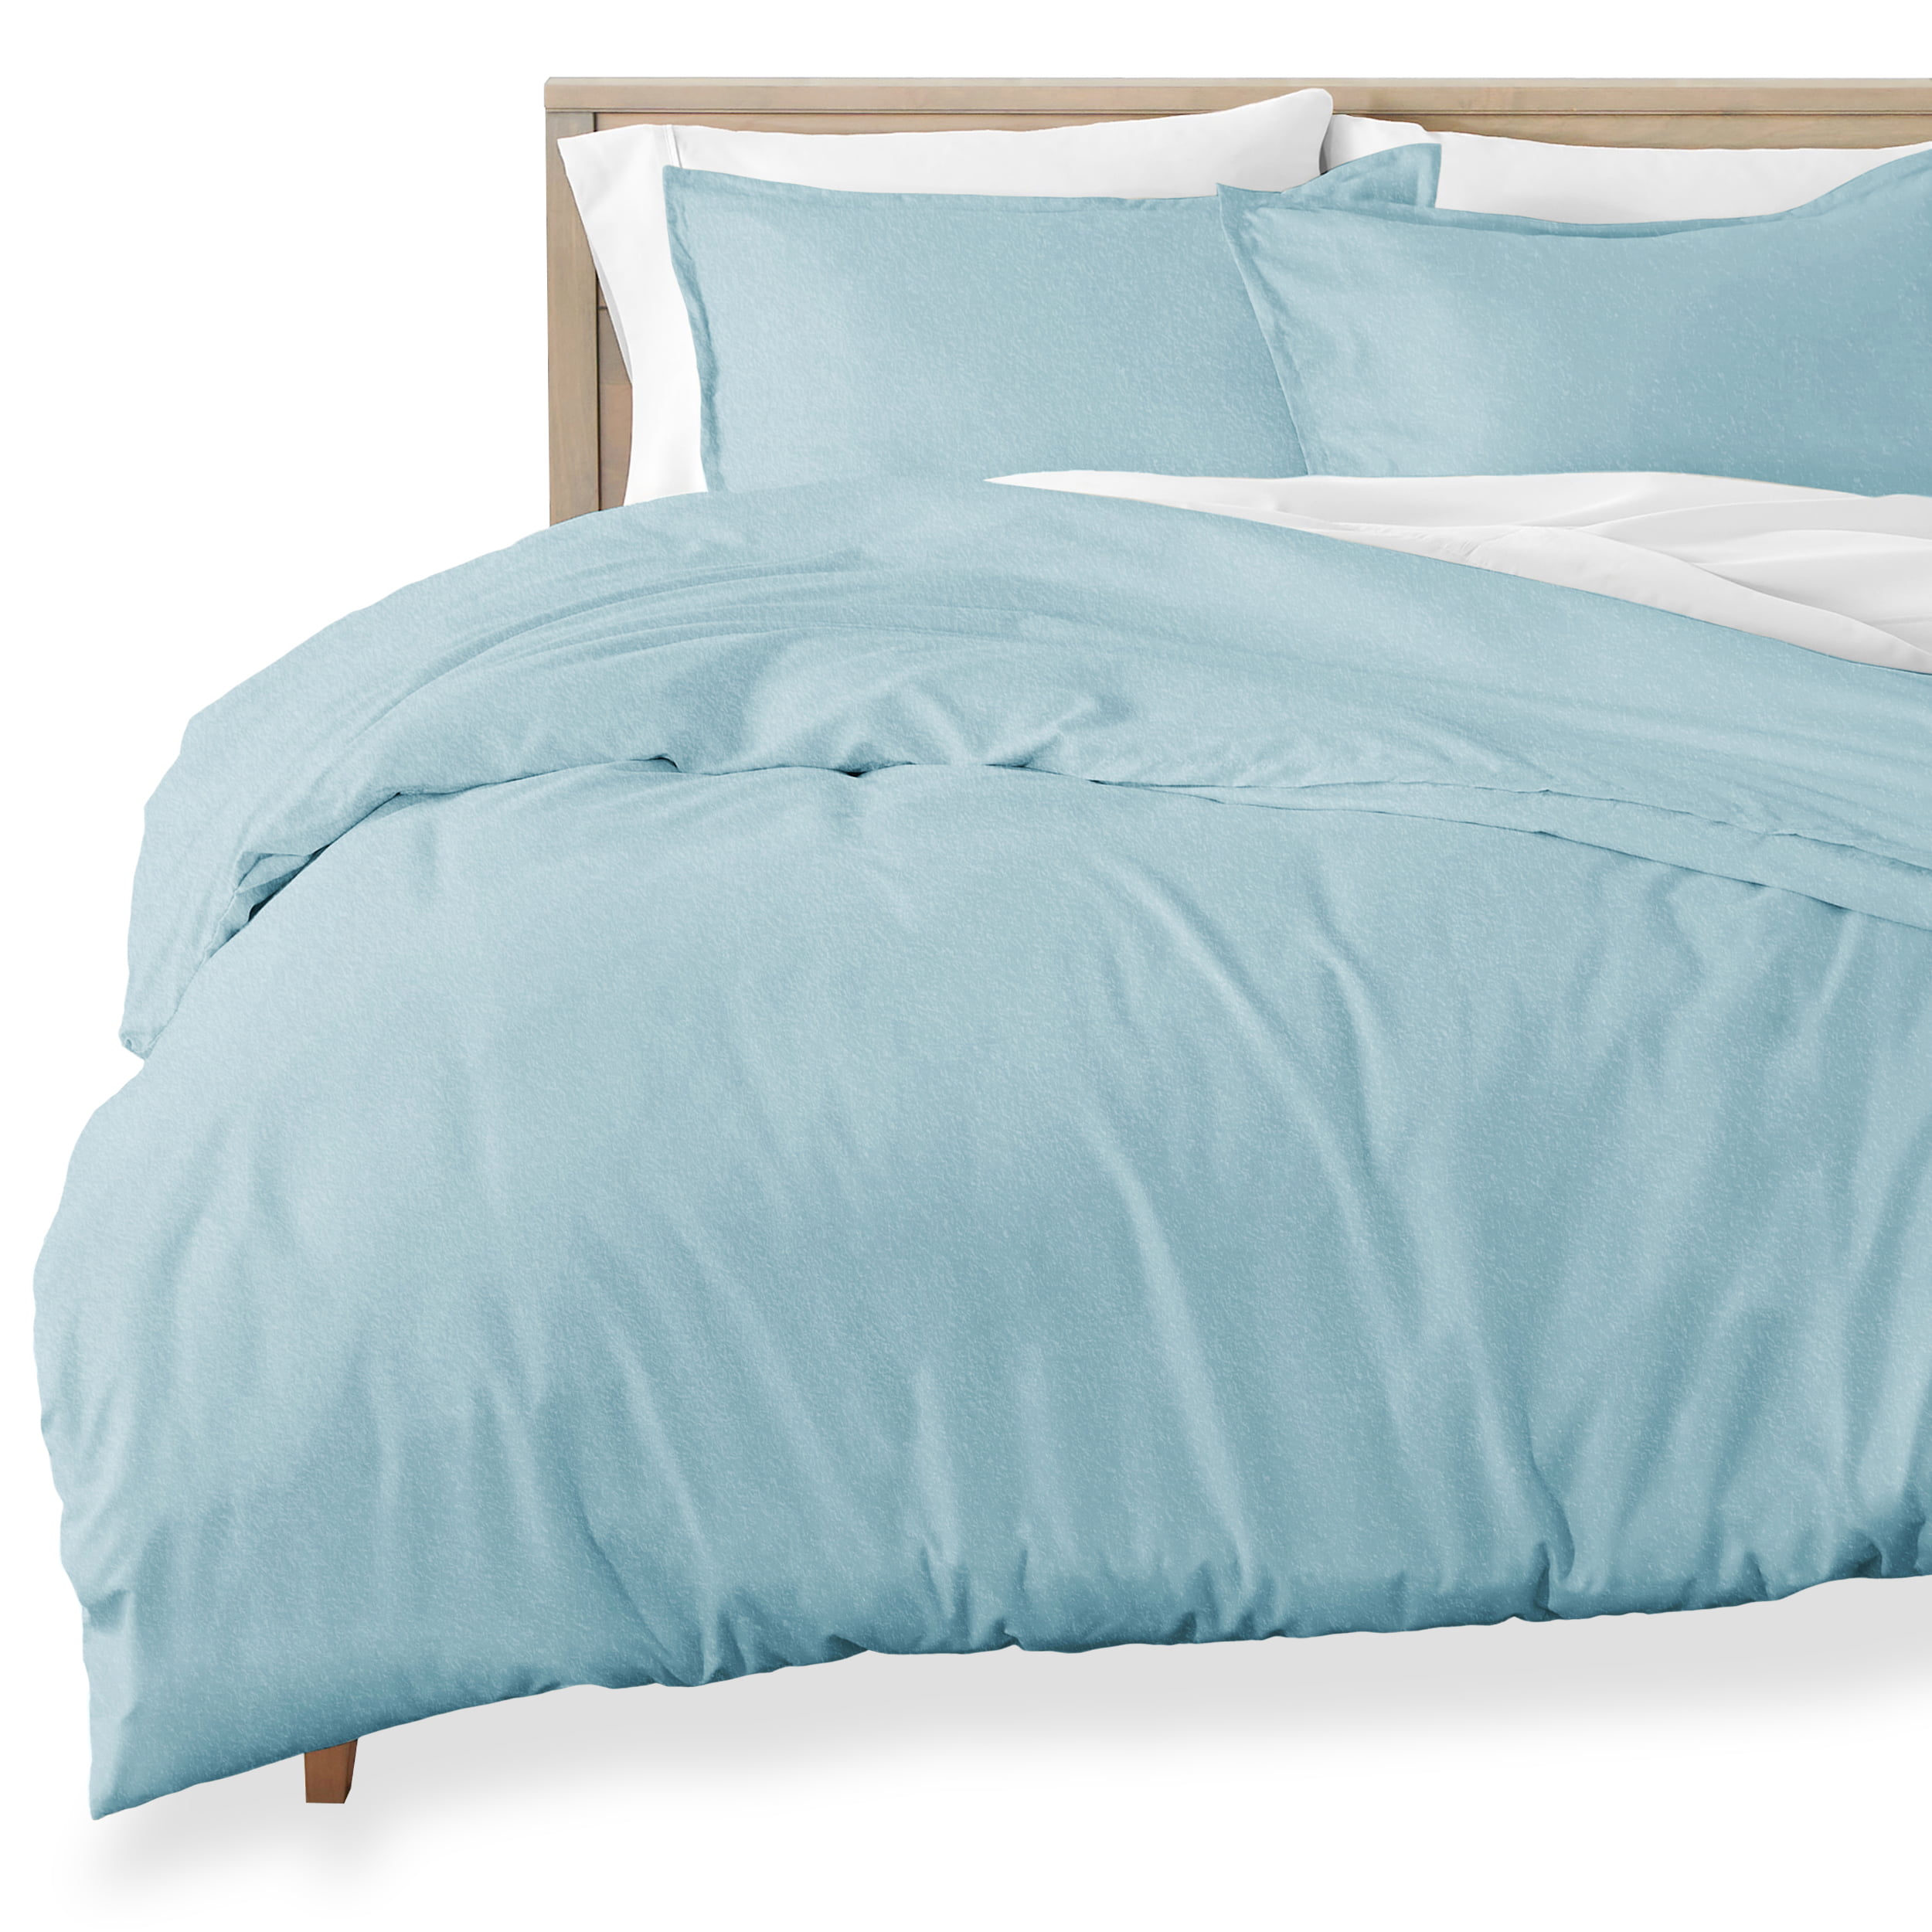 Blue,King Flanellette Duvet Cover & Pillowcase Set 100% Cotton Quality Fabric Super Soft